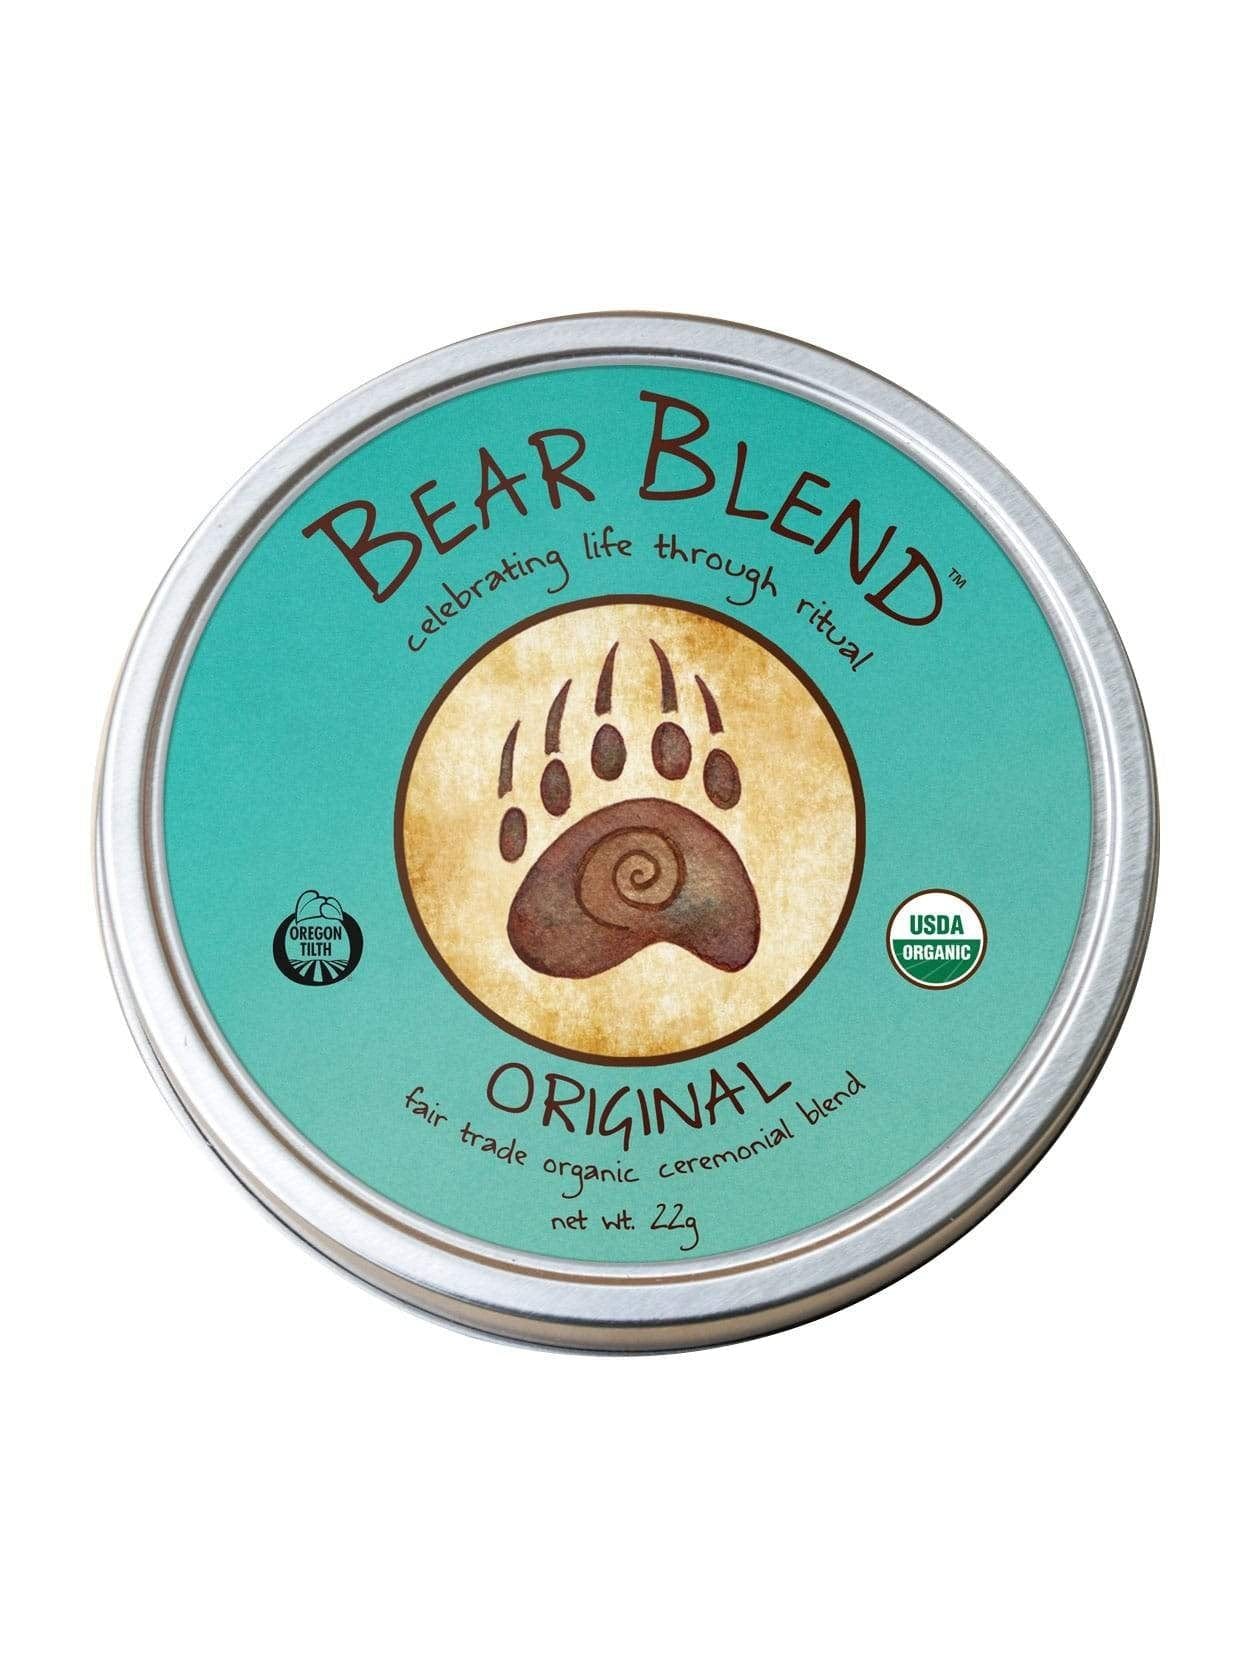 Bear Blend Organic Smoke Blend - Original, so002-Loose